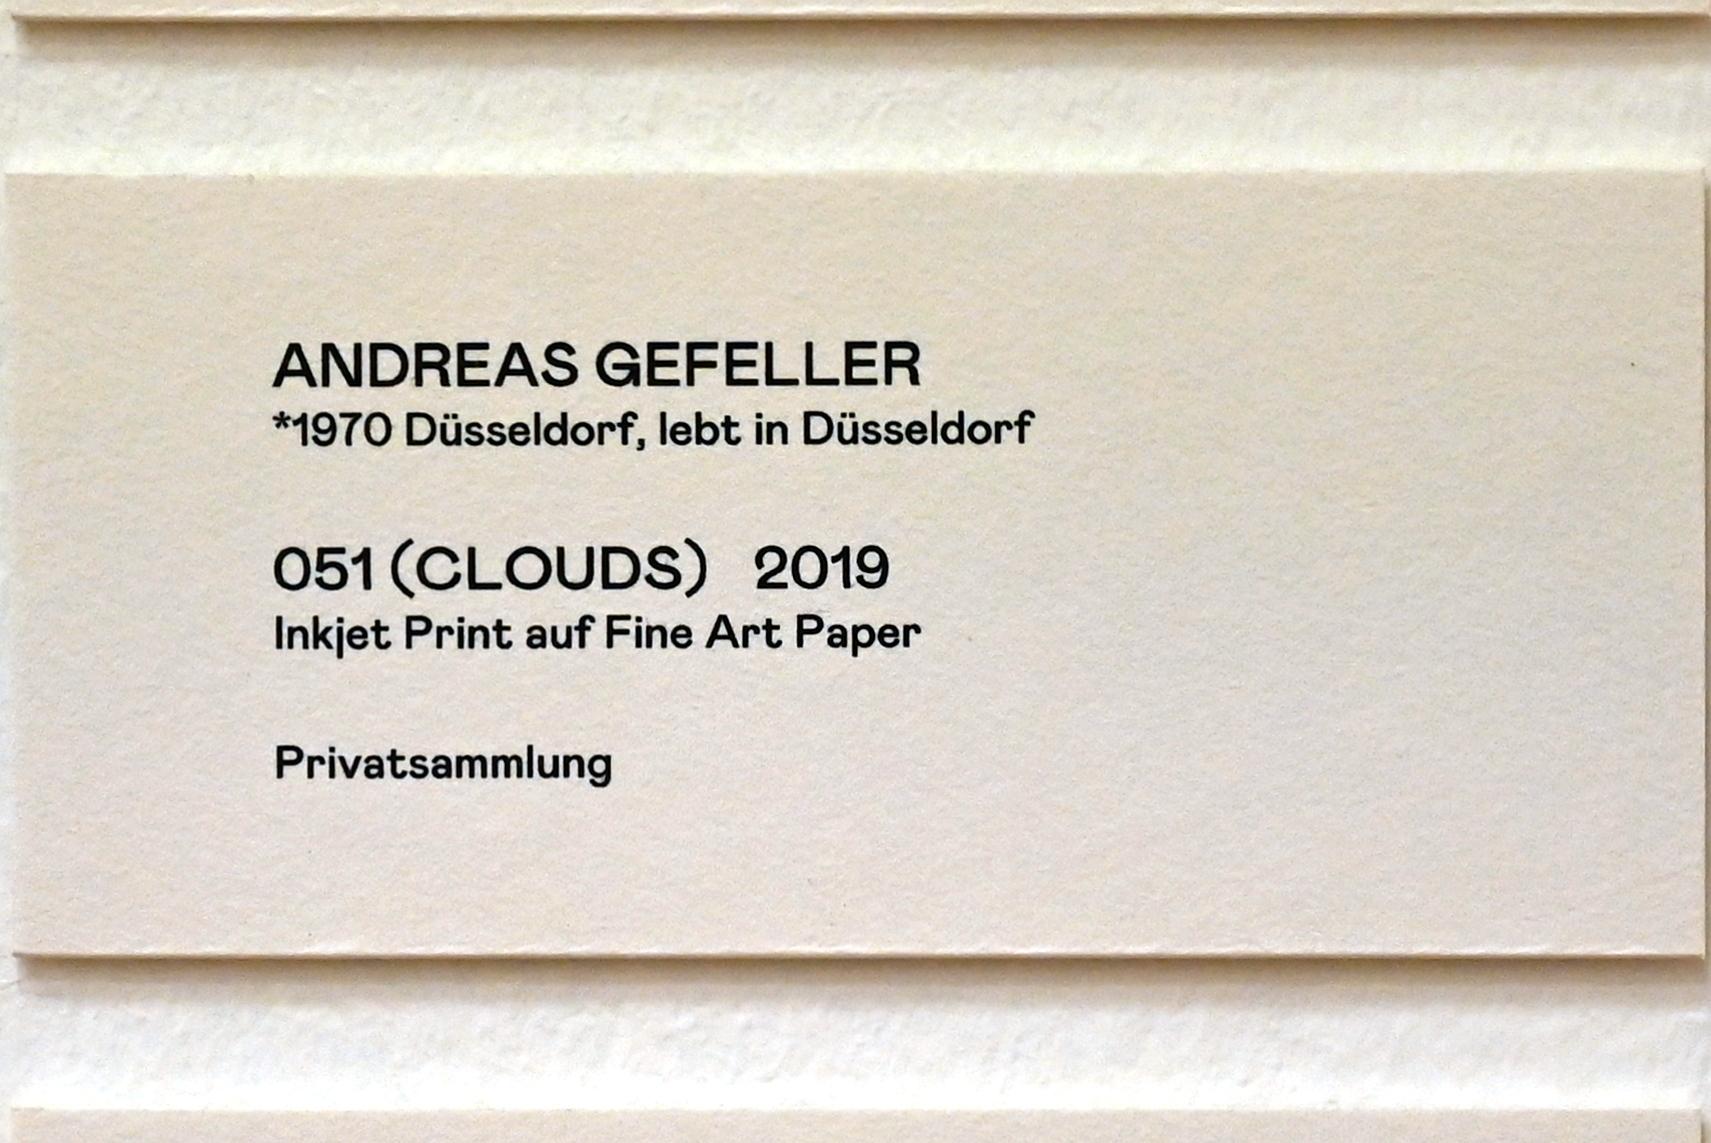 Andreas Gefeller (2019), 051 (Clouds), Bonn, Kunstmuseum, Ausstellung "Welt in der Schwebe" vom 24.02. - 19.06.2022, Saal 6, 2019, Bild 2/2